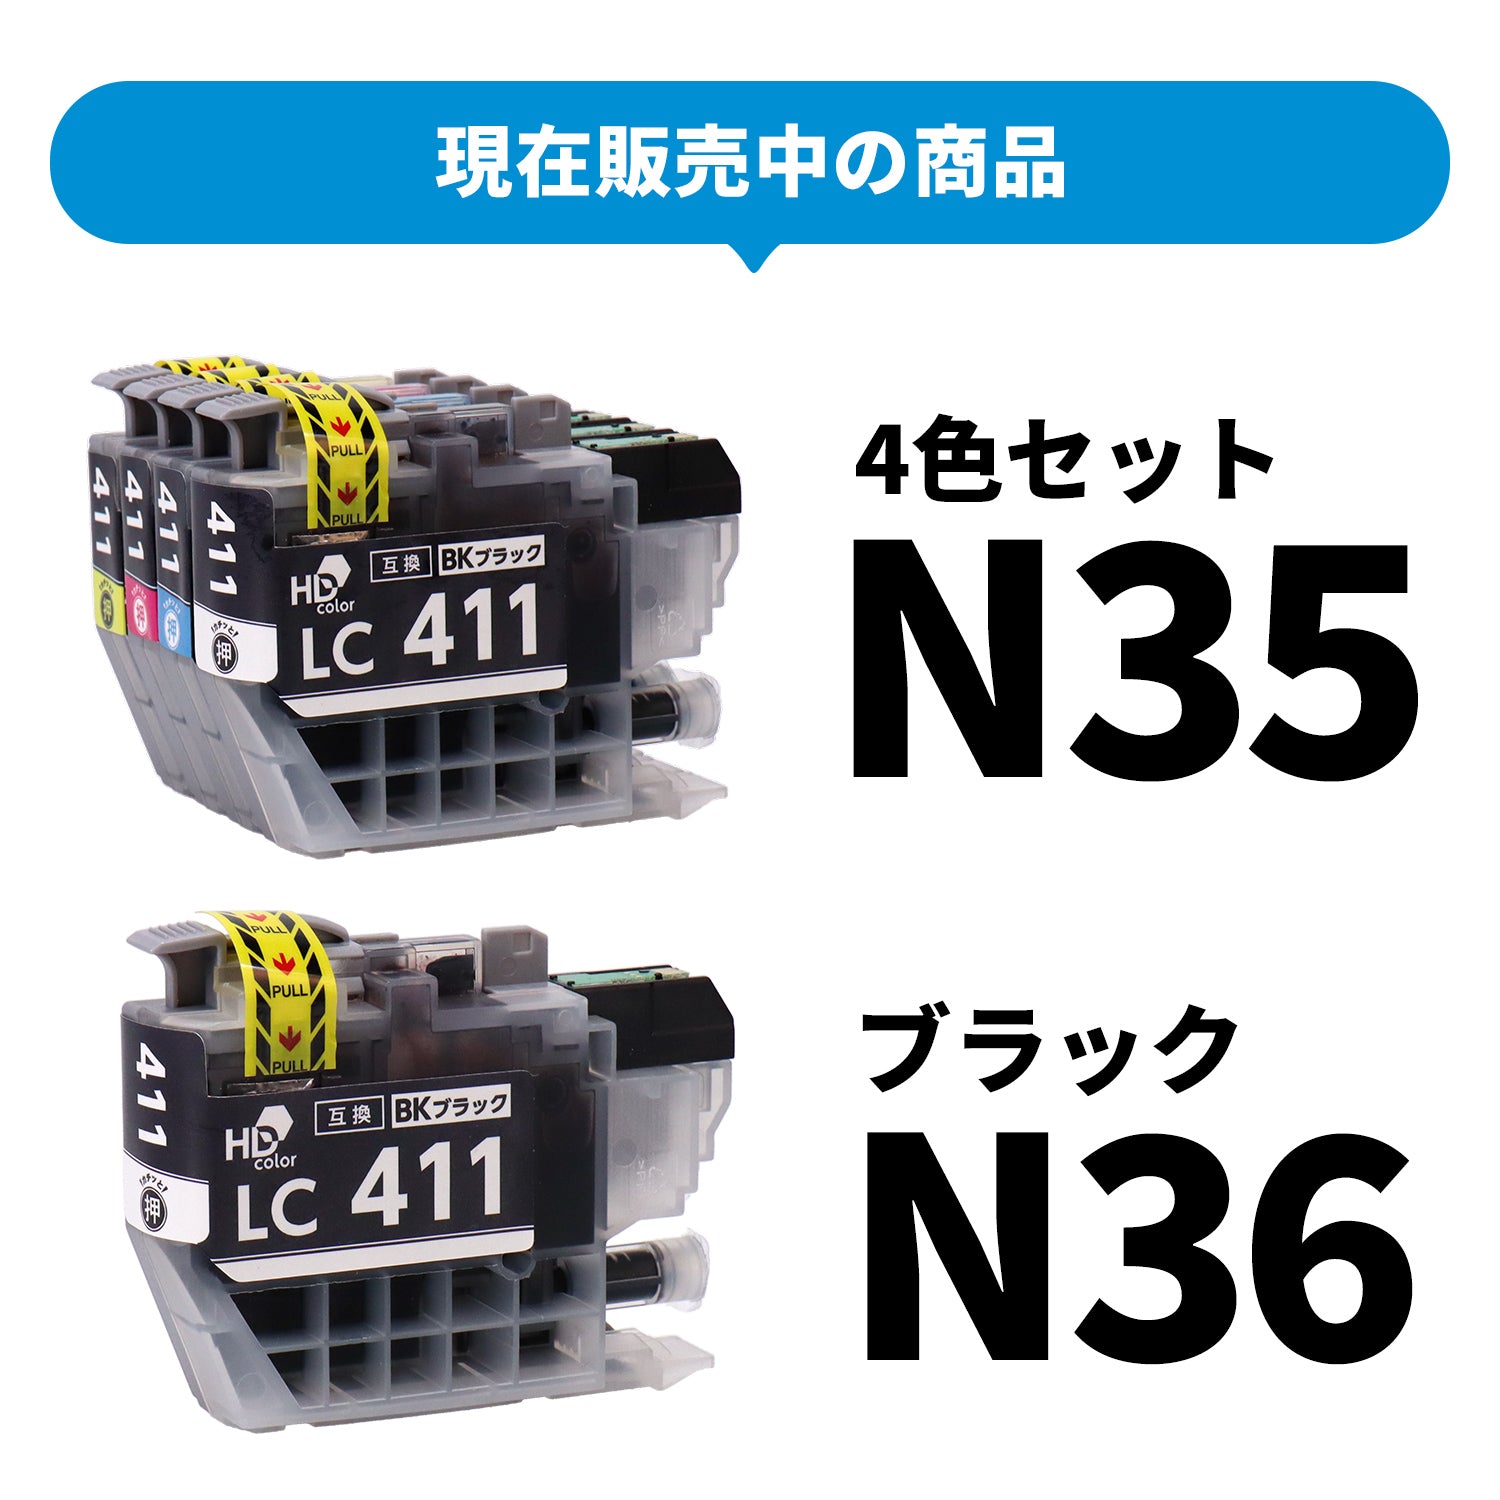 ブラザー用 LC411-4PK 互換インク 4色セット＋ブラック